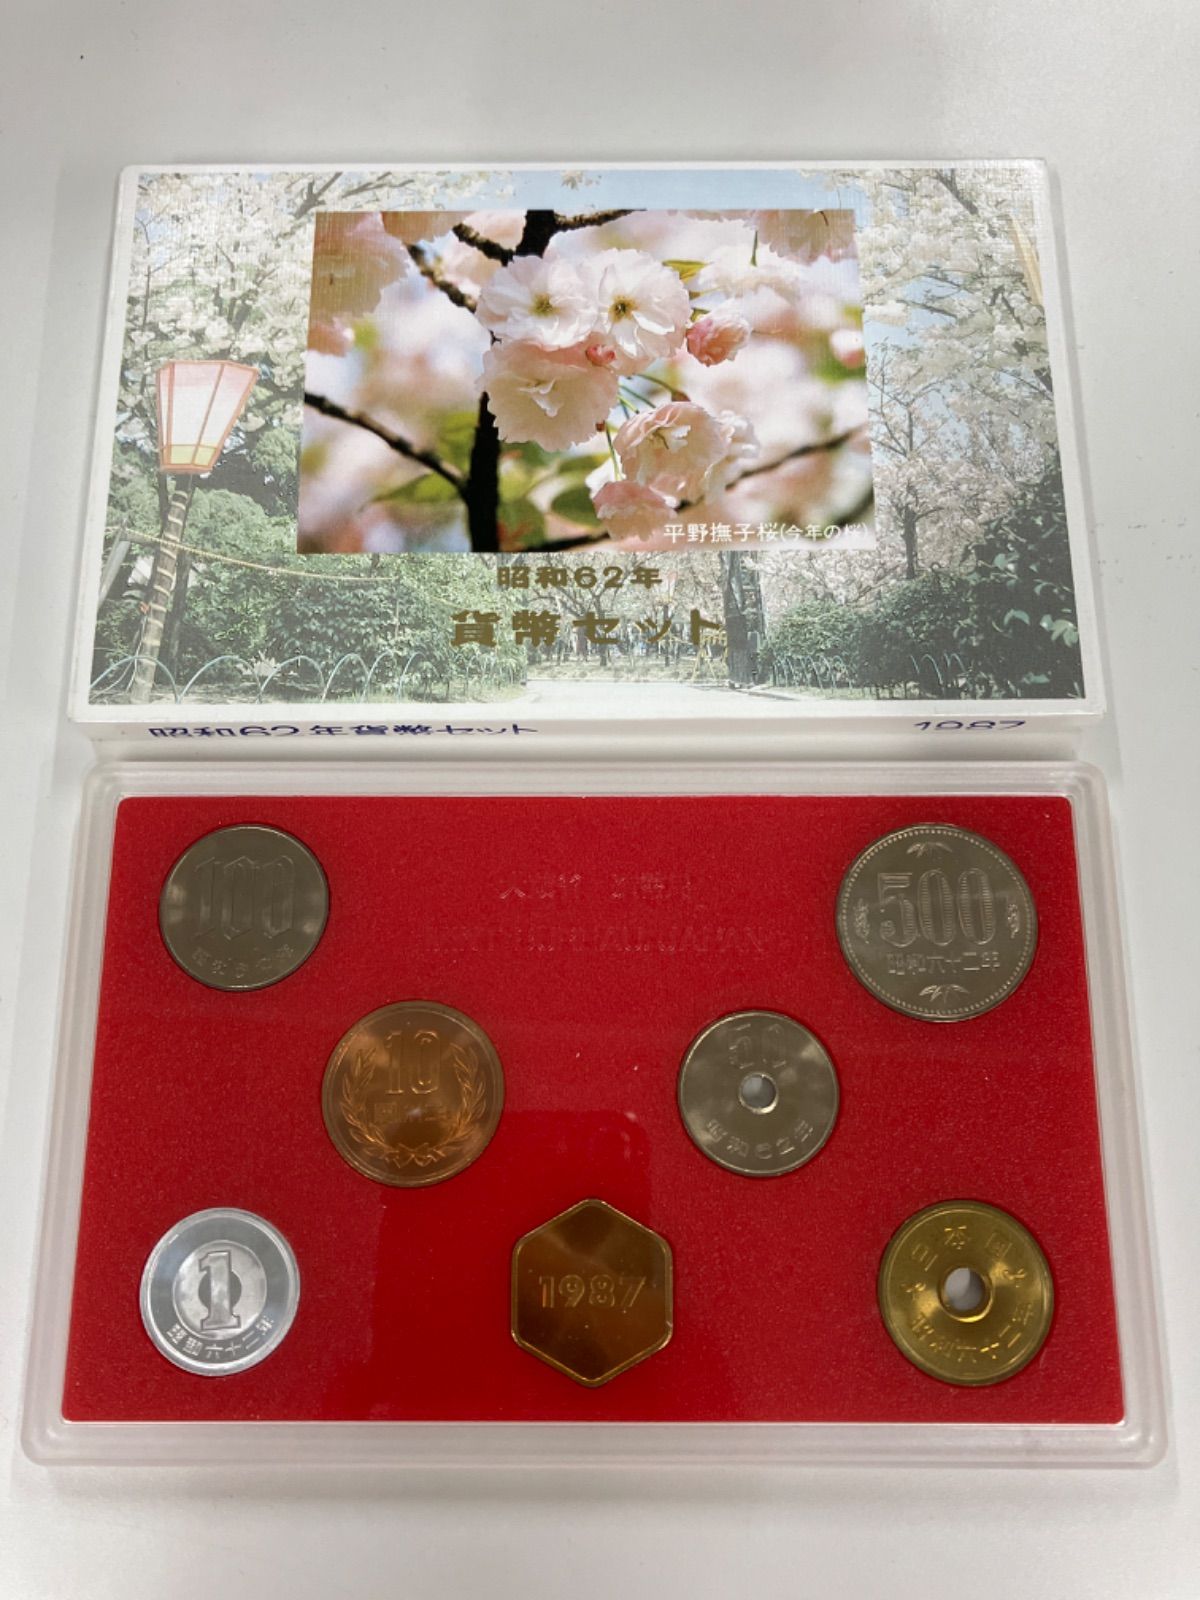 大蔵省 造幣局 昭和62年硬貨セット - 通販 - gofukuyasan.com